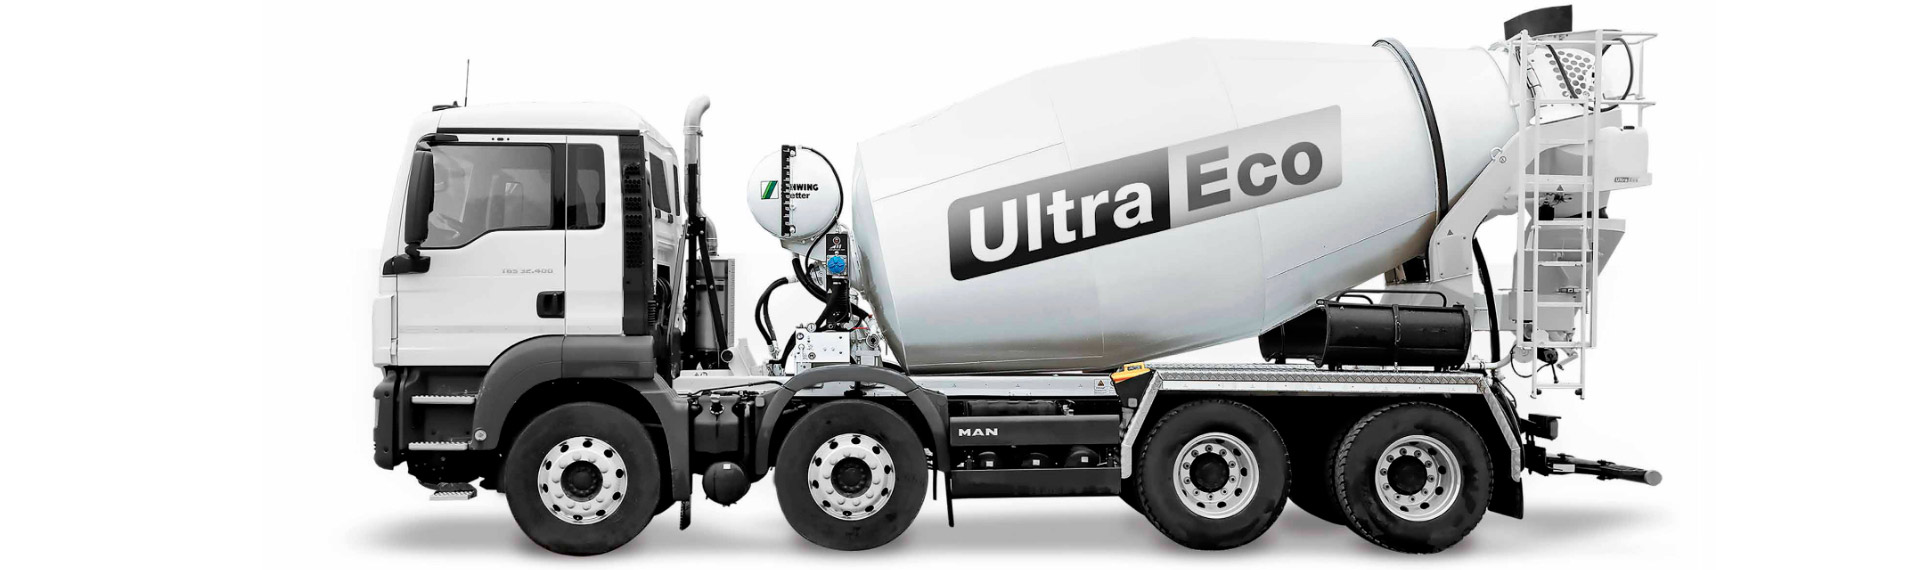 摩耗に強いHardox®耐摩耗鋼板を採用した白黒デザインのUltra-Ecoコンクリートミキサートラック